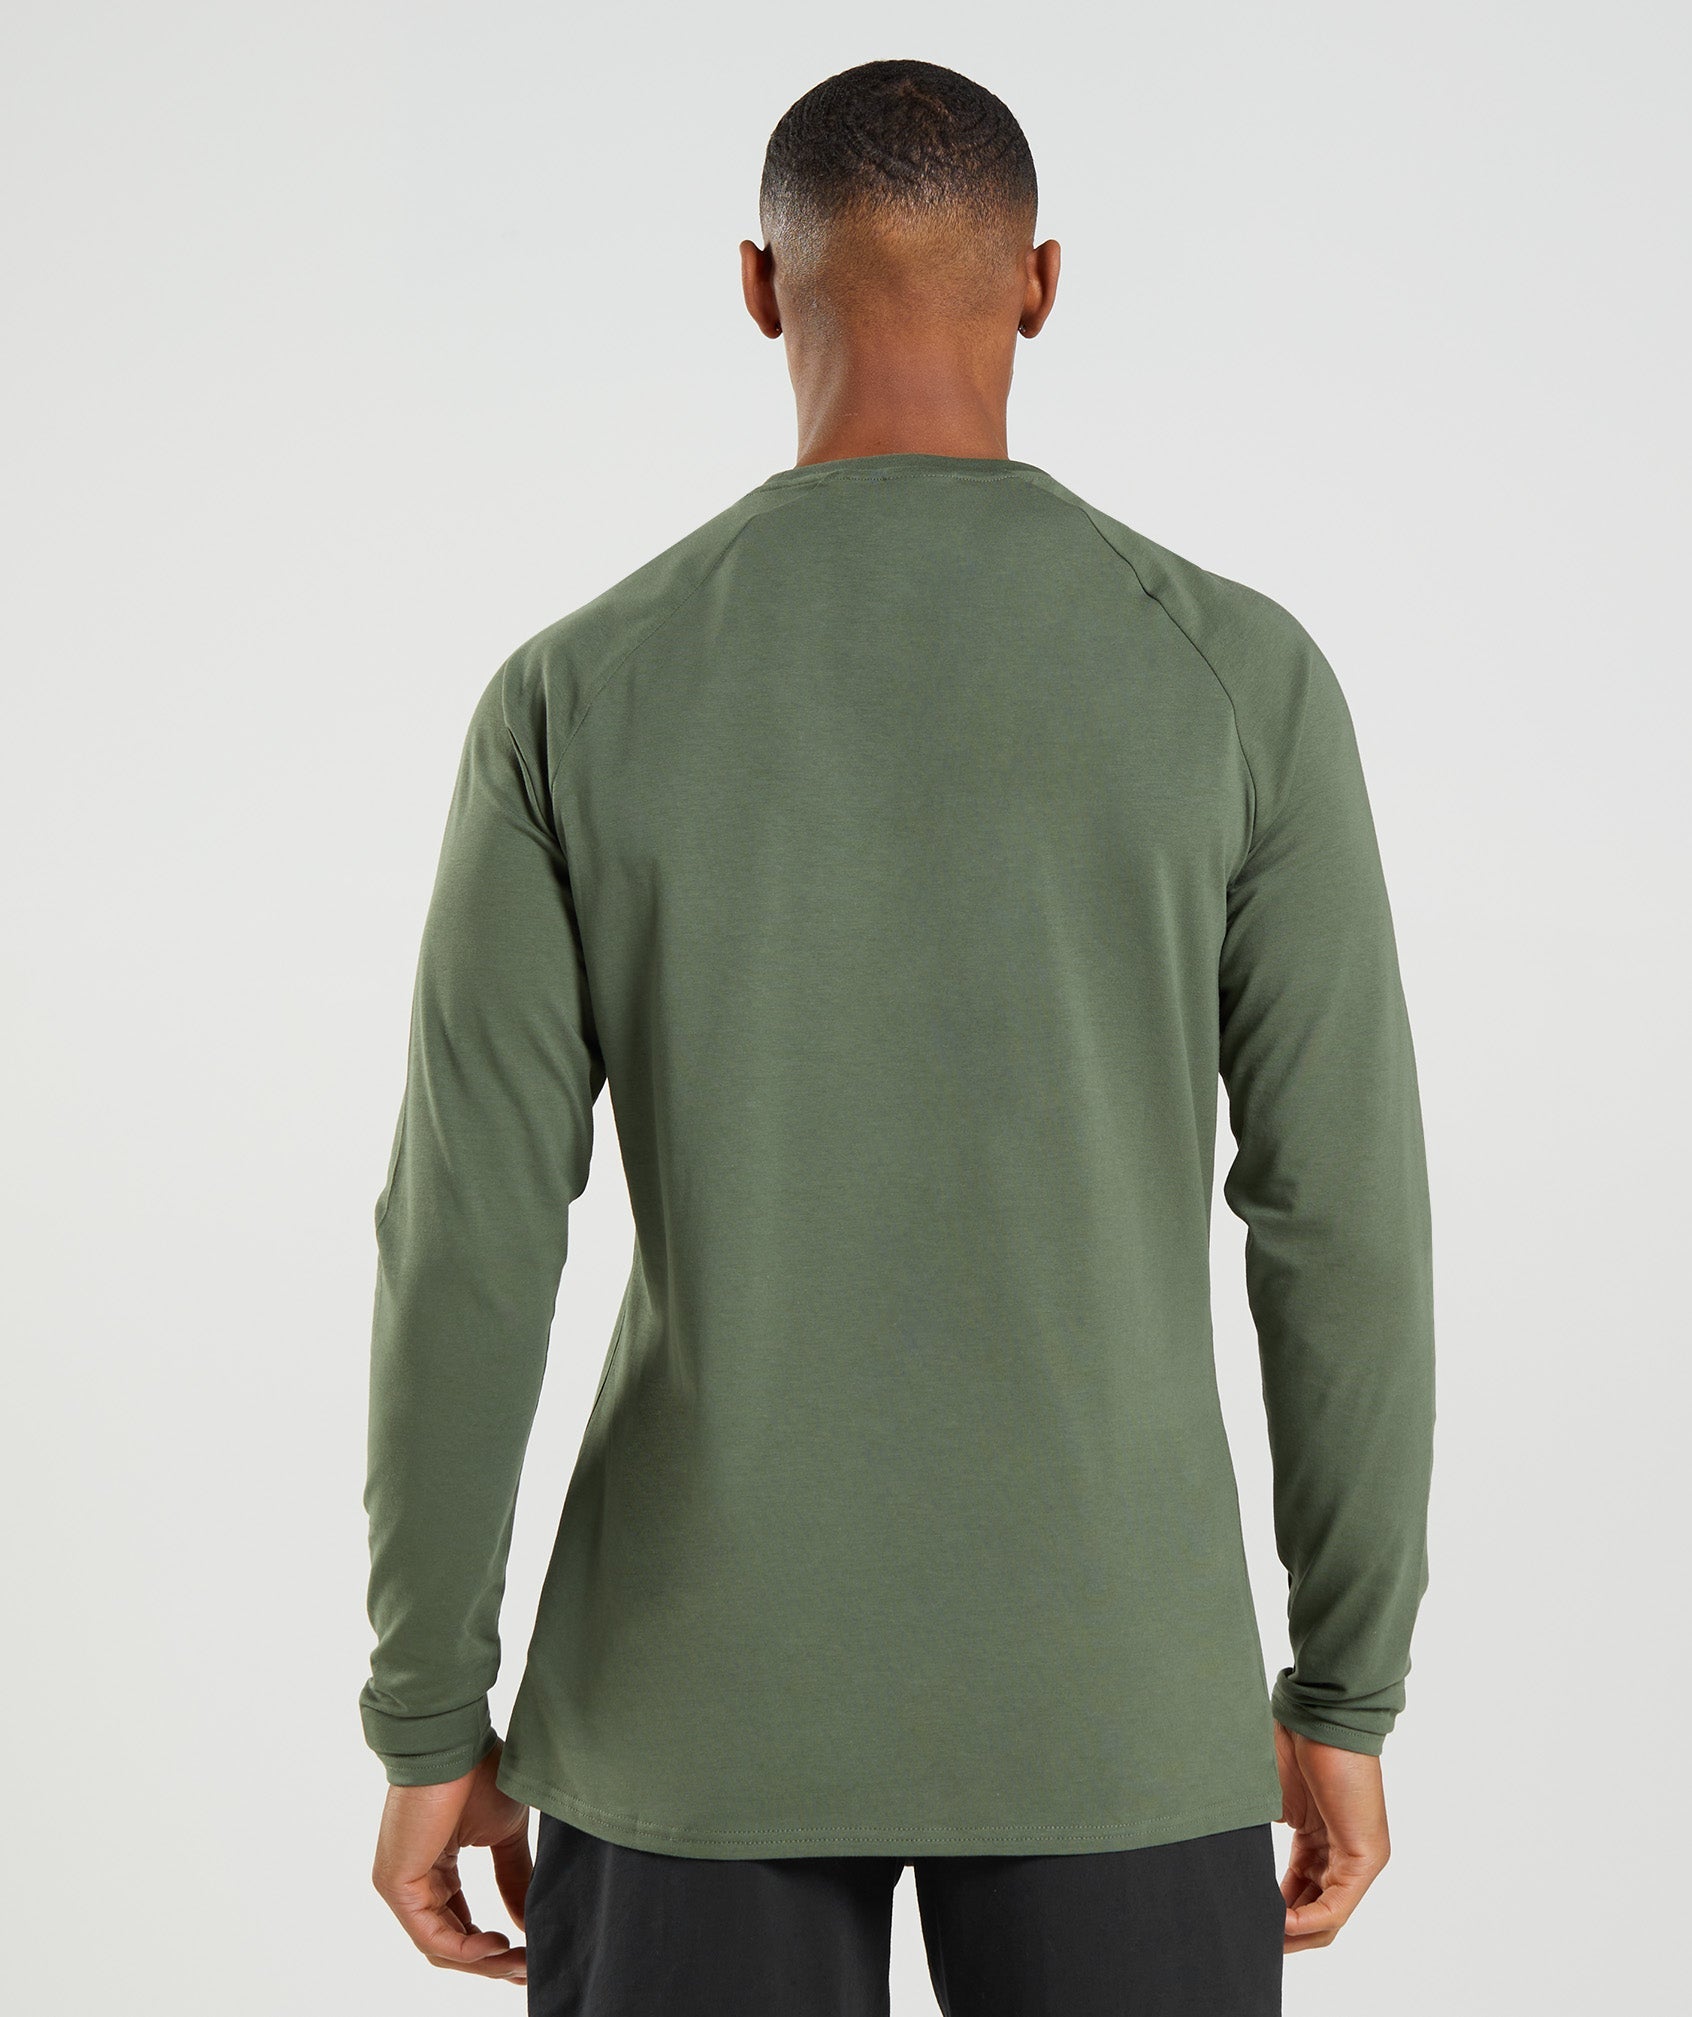 Apollo Camo Long Sleeve T-Shirt in Camo Green